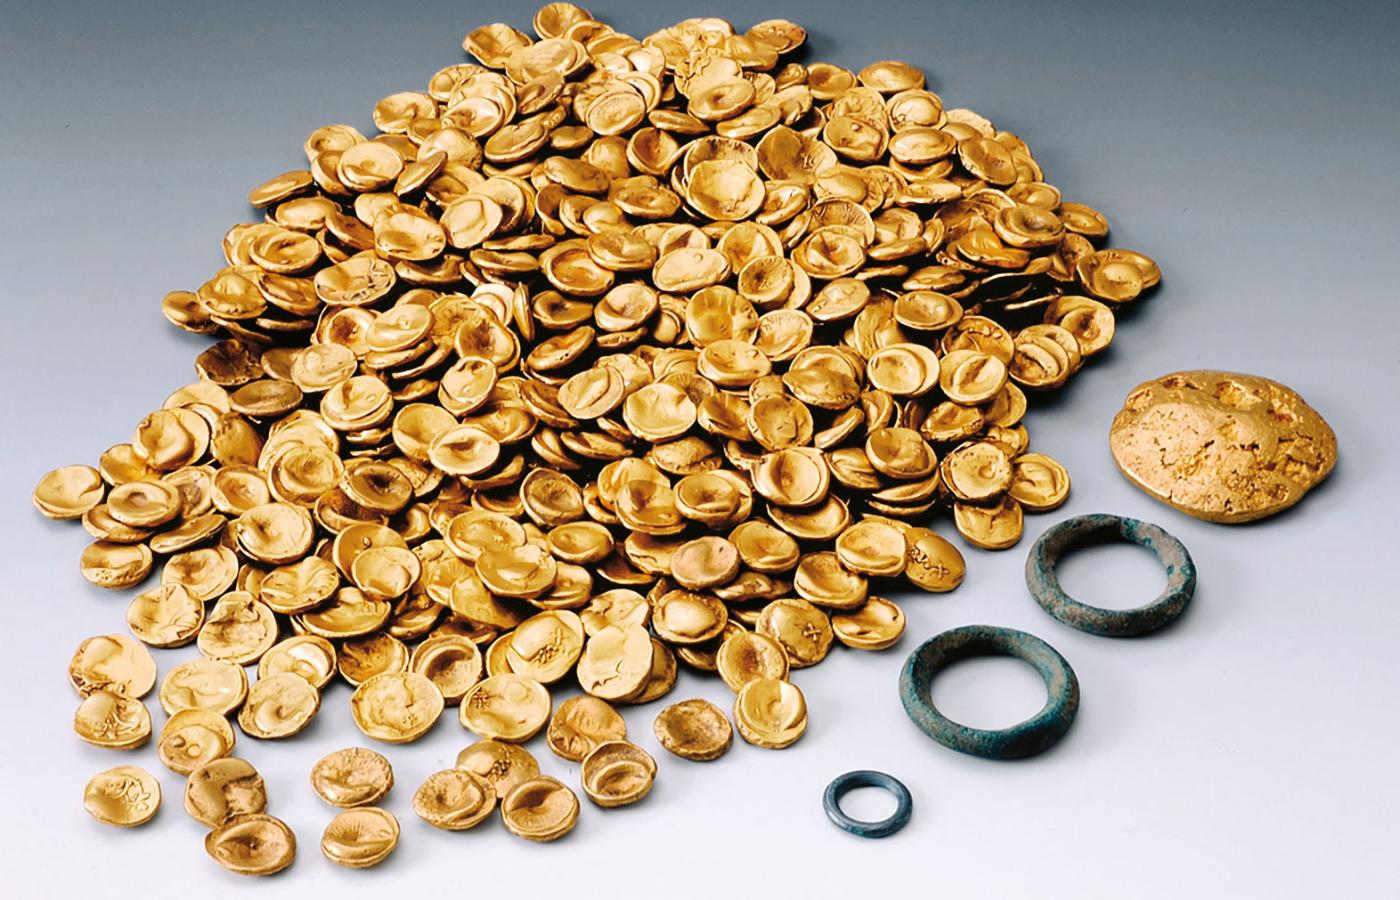 483 złote monety celtyckie, które skradziono z Kelten-Römer Museum w Manching w Bawarii 22 listopada, ważyły 3,724 kg i po przetopieniu mogą dać zysk w wysokości zaledwie 250 tys. euro – dla naukowców są zaś bezcenne.